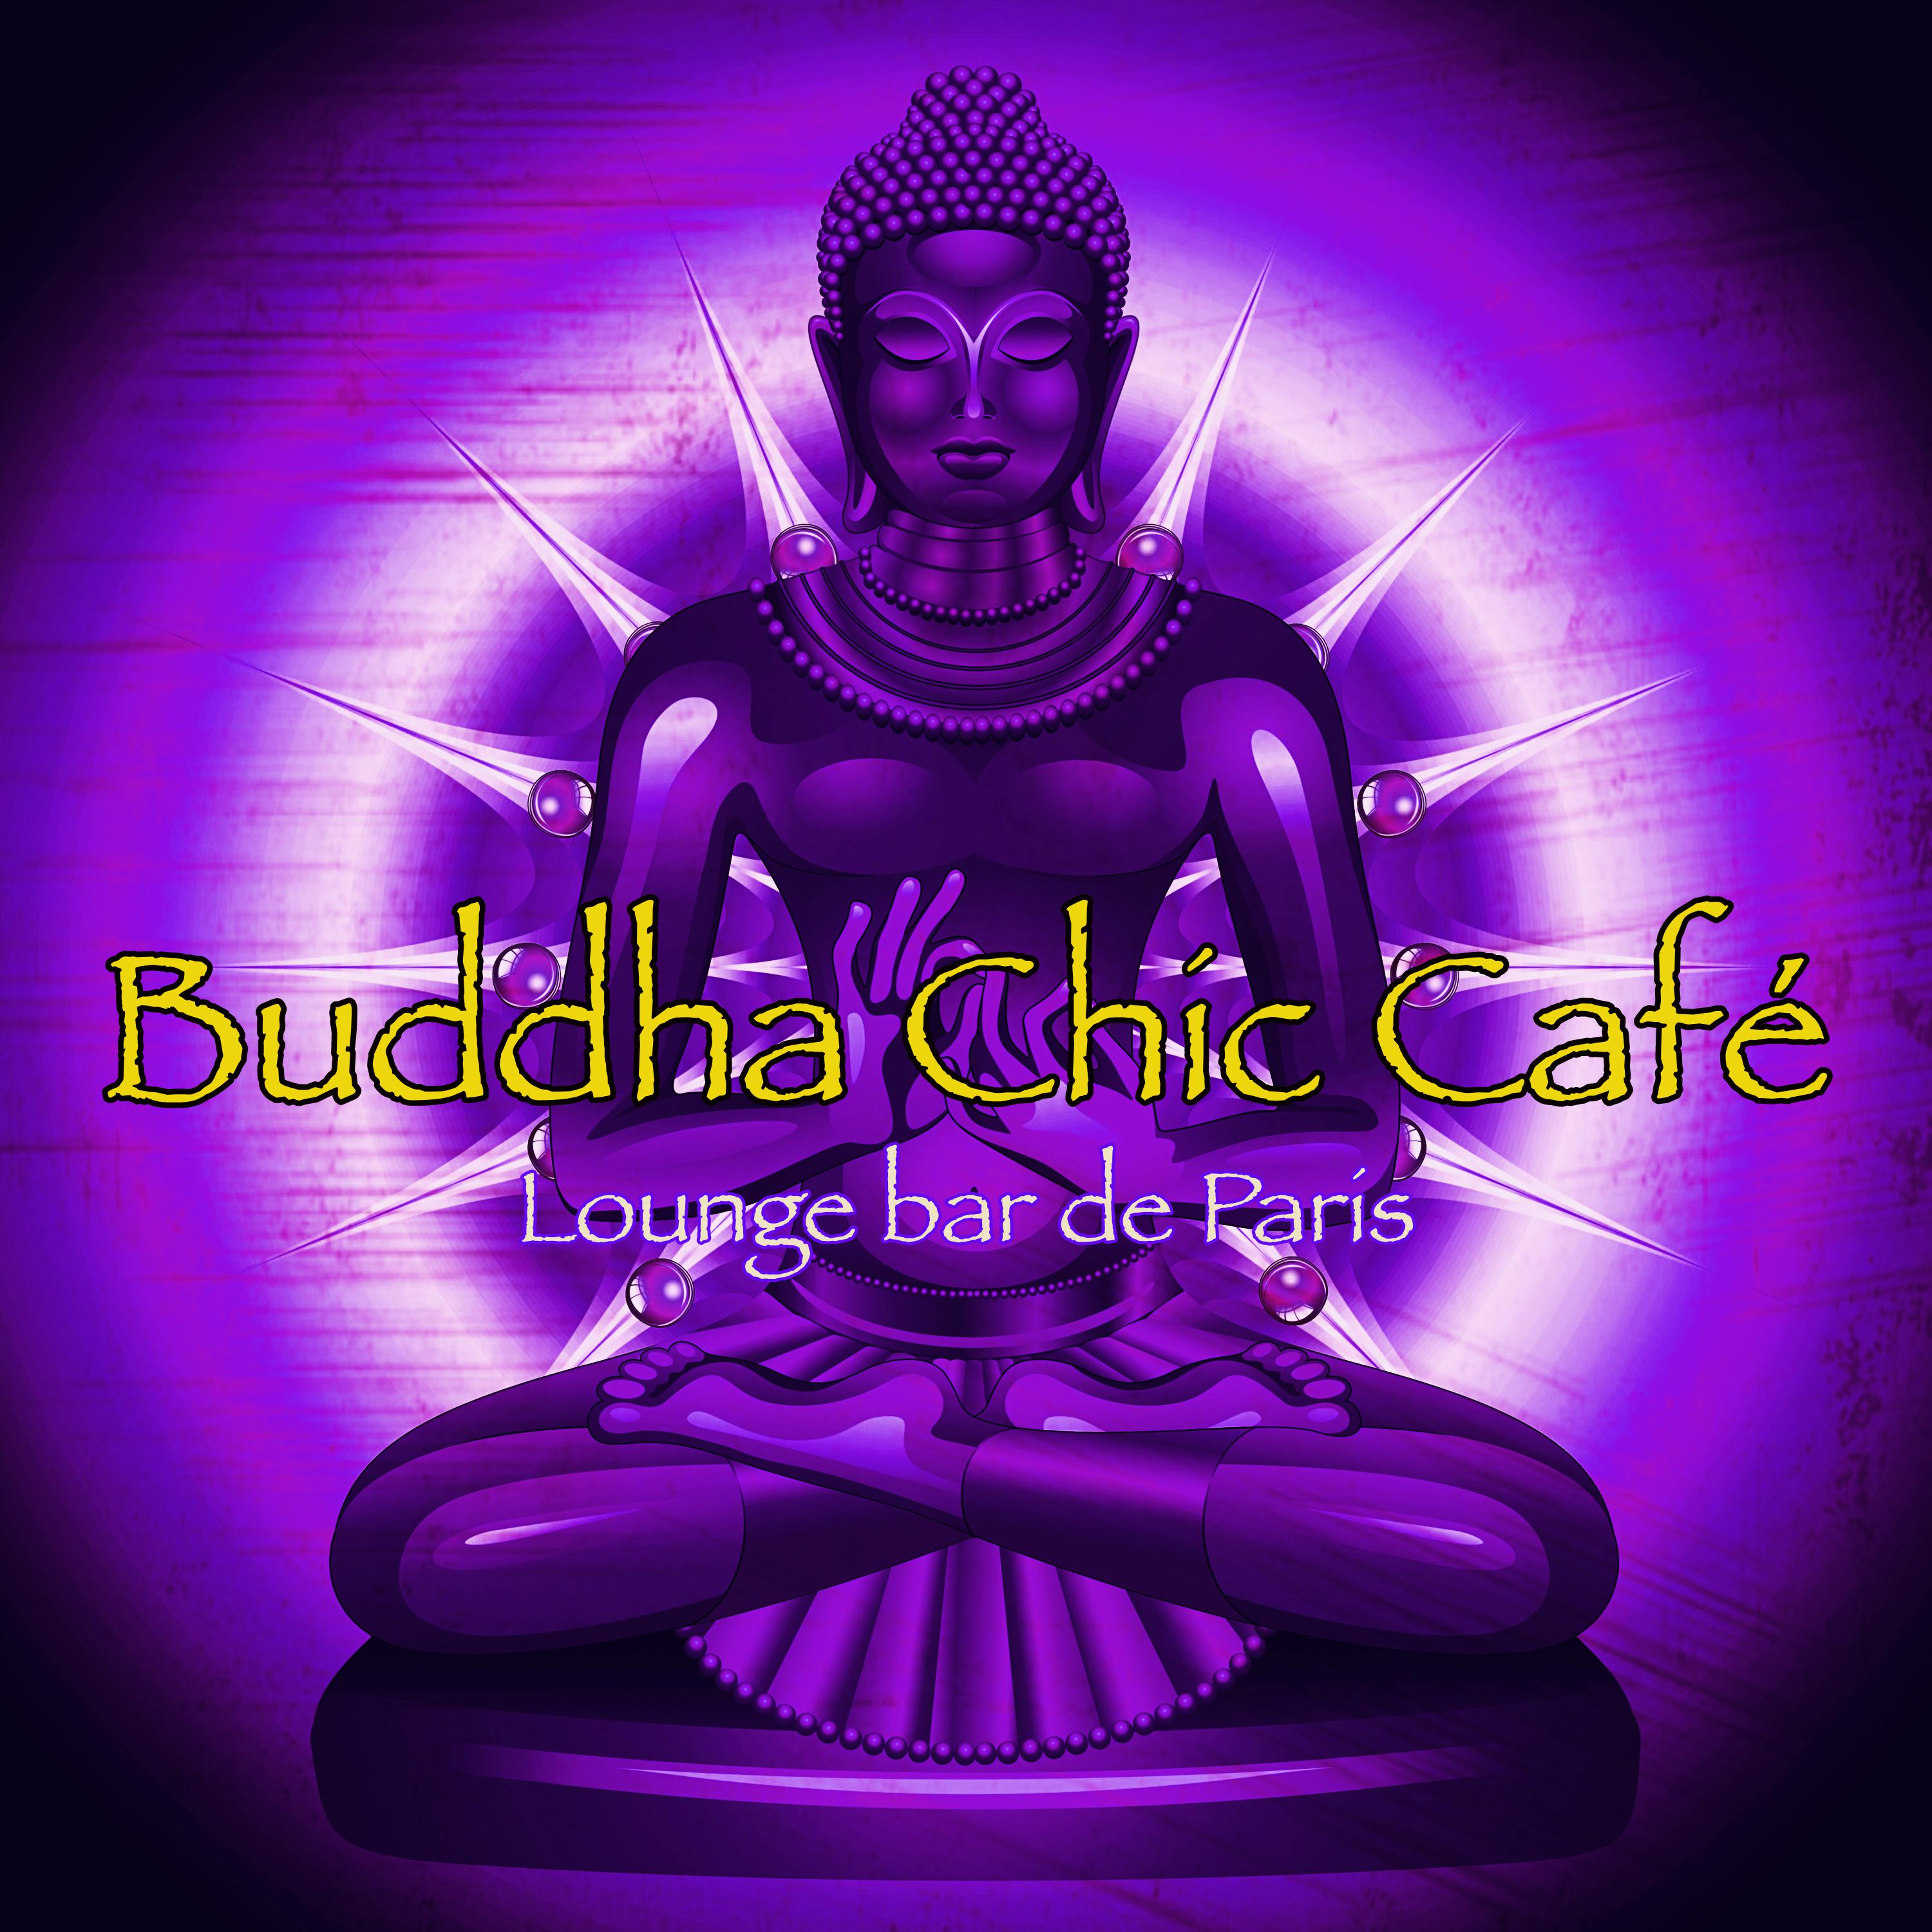 Buddha Chic Cafe  Lounge bar de Paris, musique sensuelle pour la nuit